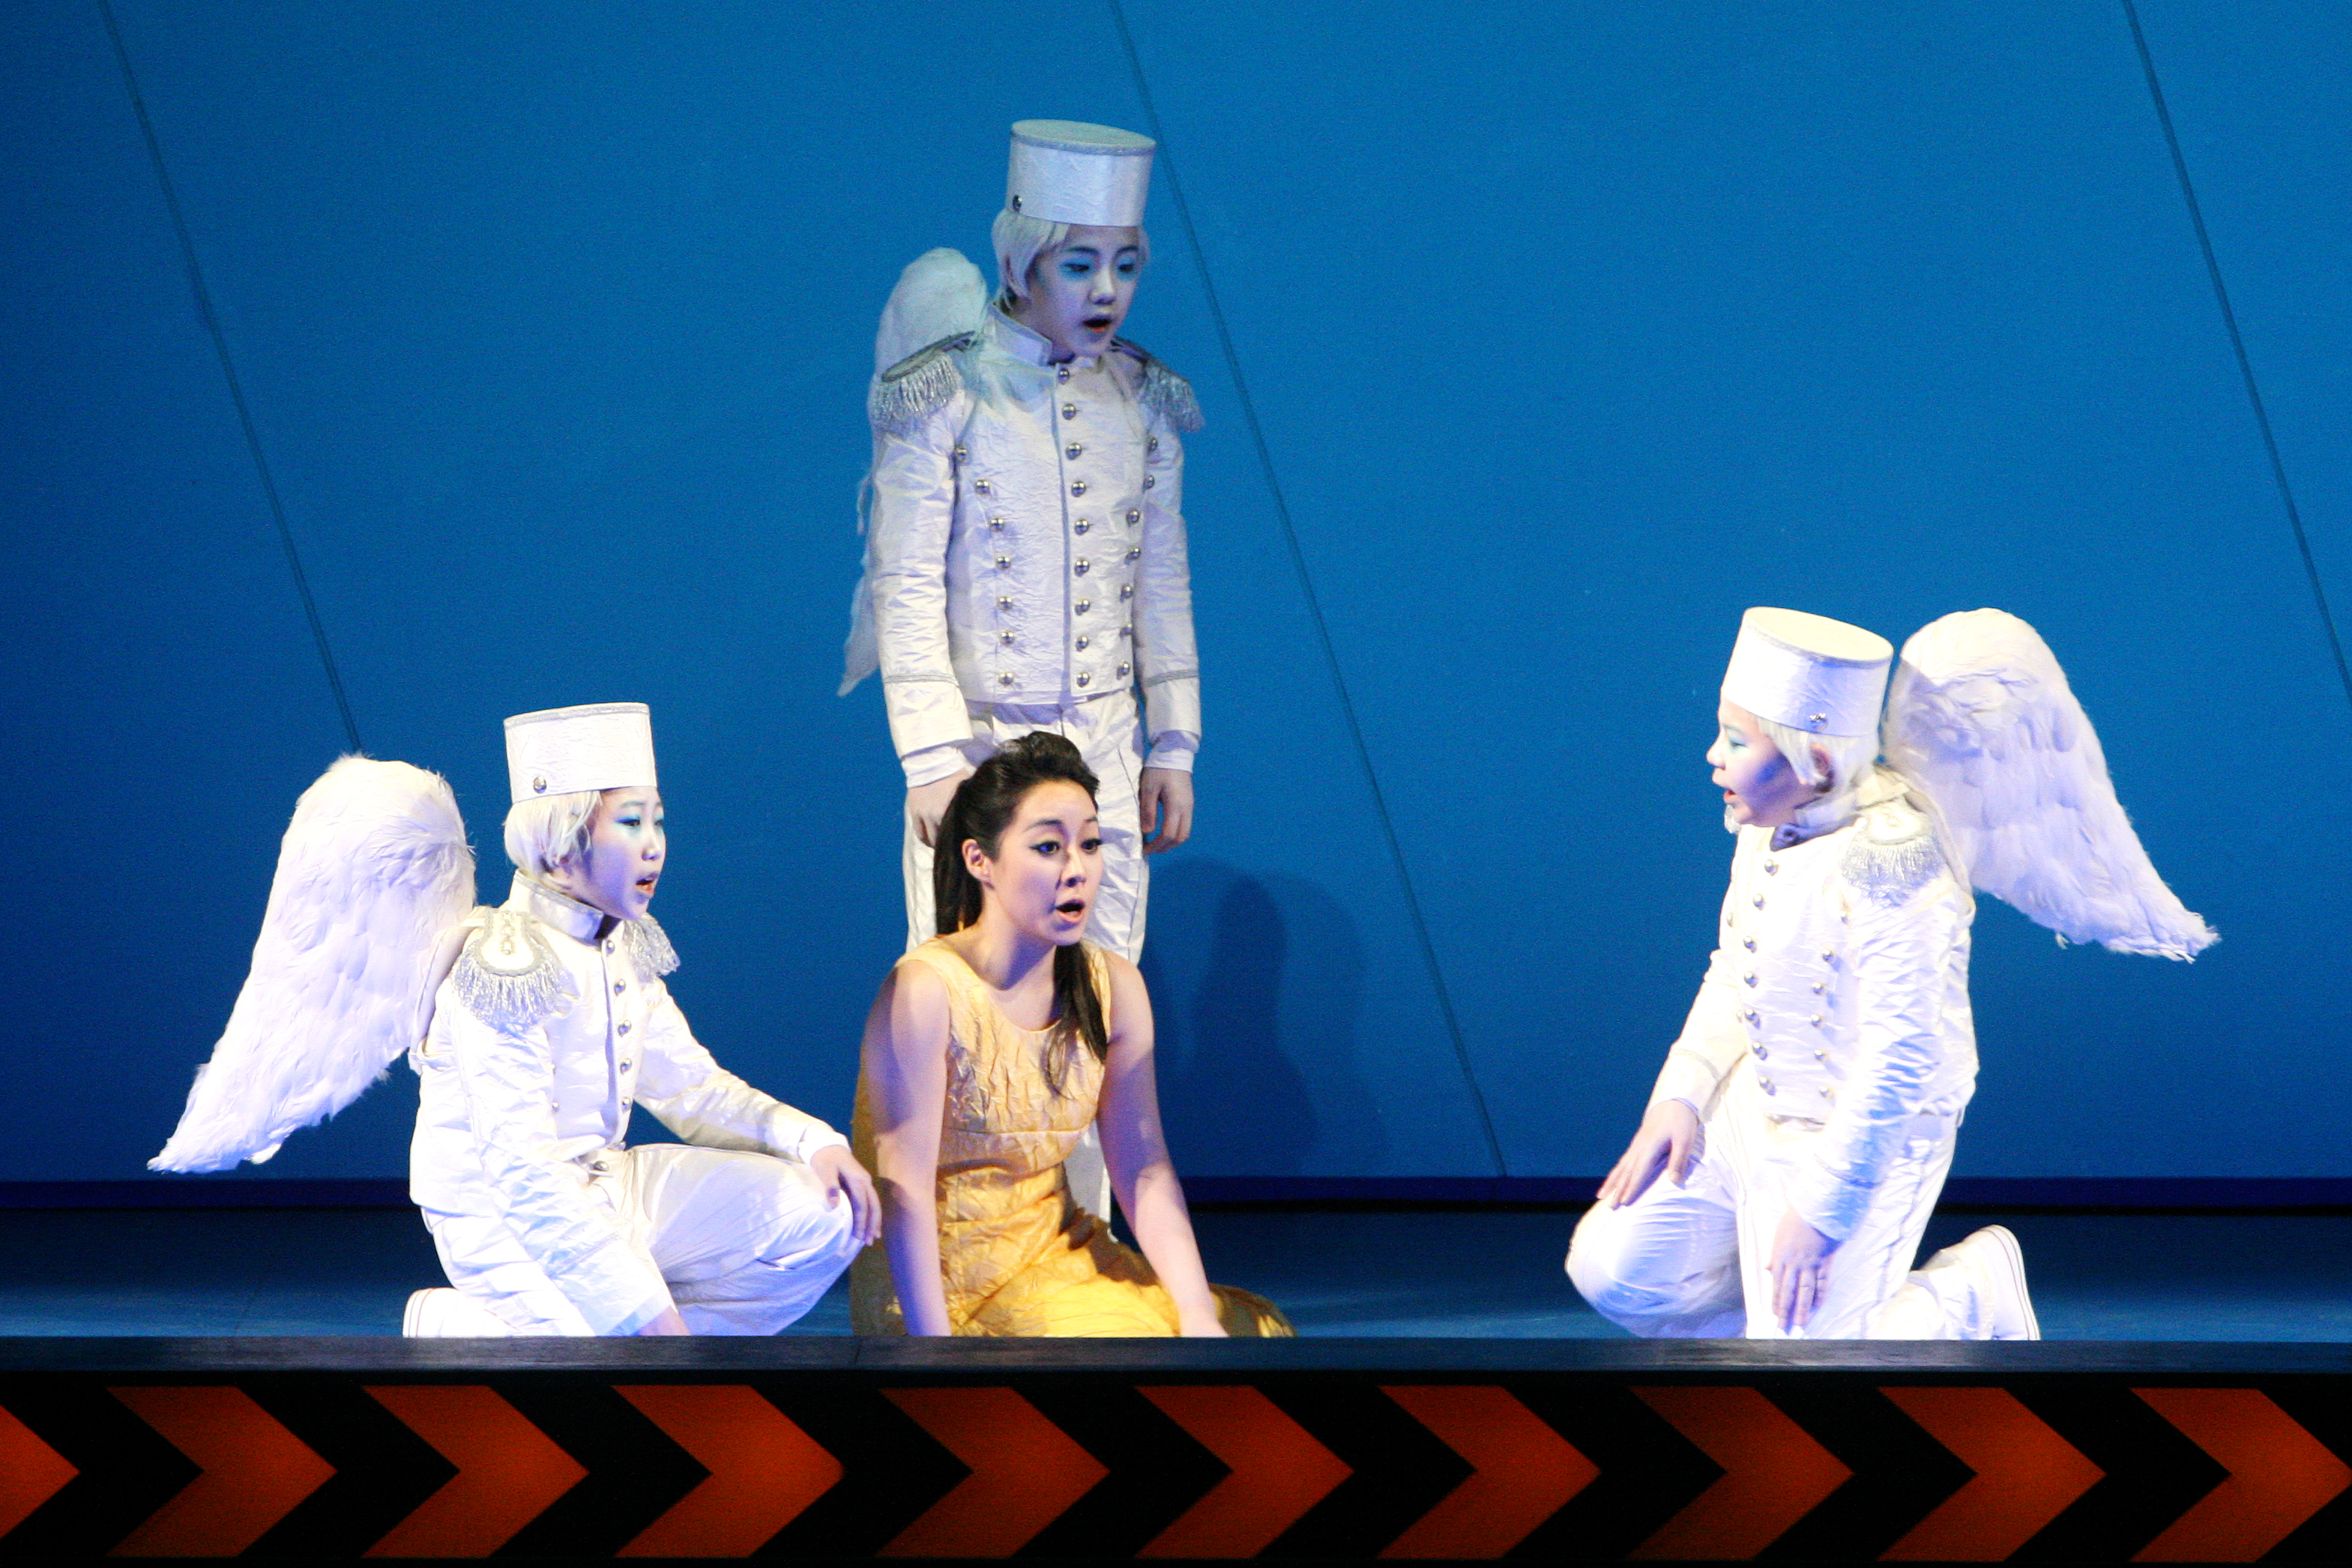 국립오페라단의 2009년 오페라 ‘마술피리’ 공연 모습. 국립오페라단 제공